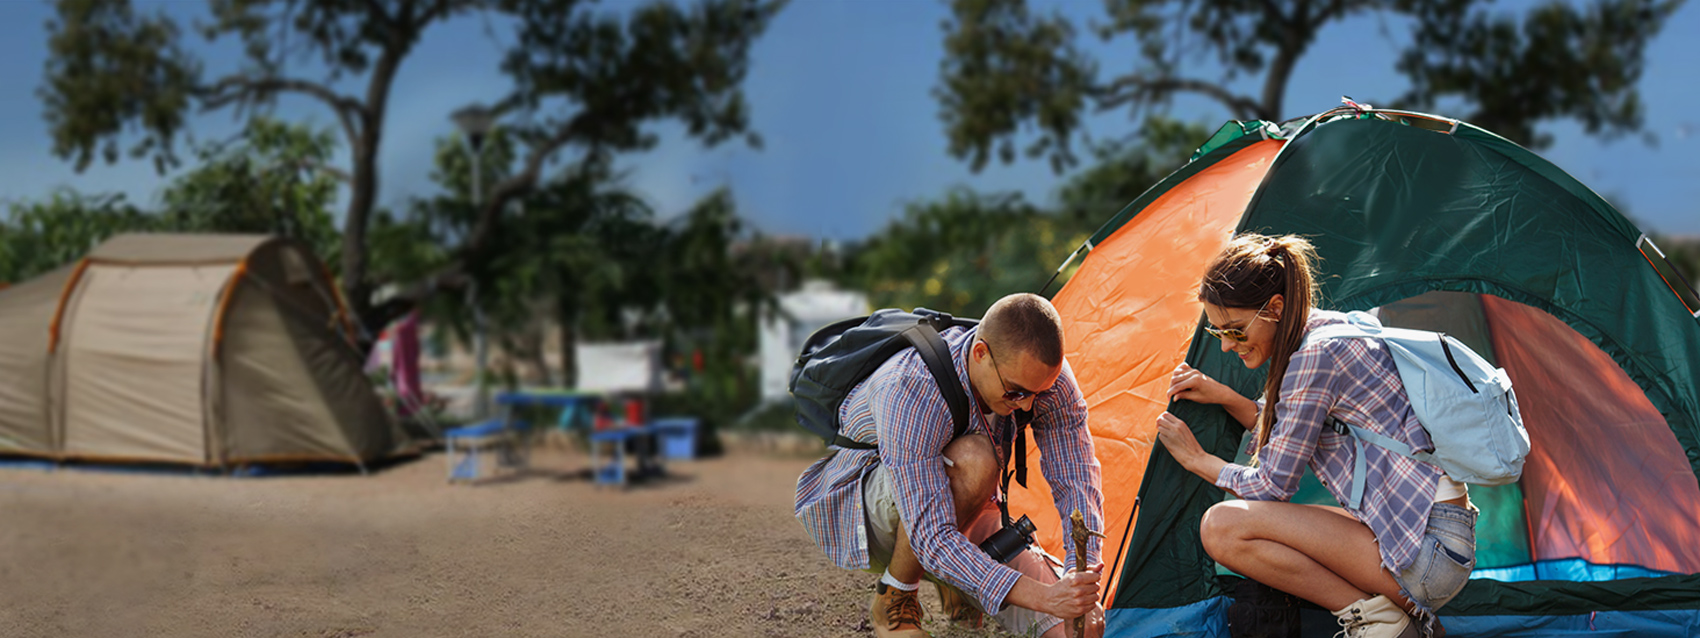 Parcelas individuales para Tiendas de campaña perfectamente equipadas para carpas - Camping Ria Formosa en Algarve